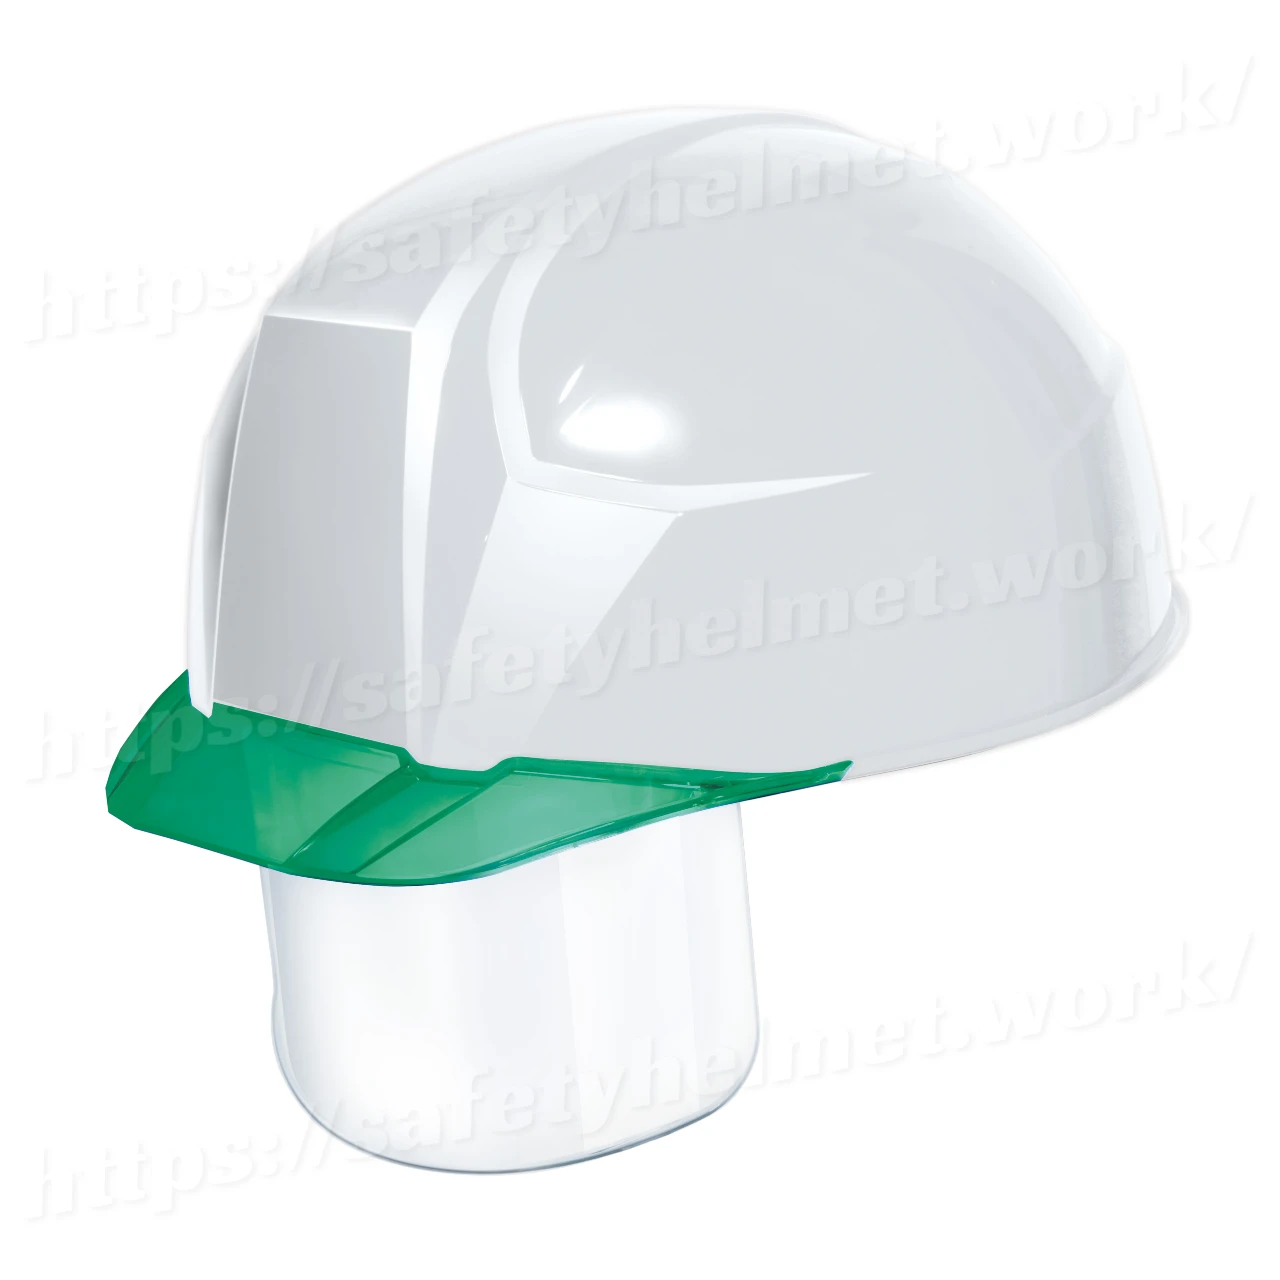 dic-helmet-lightest-shield-aa23cs-white-green